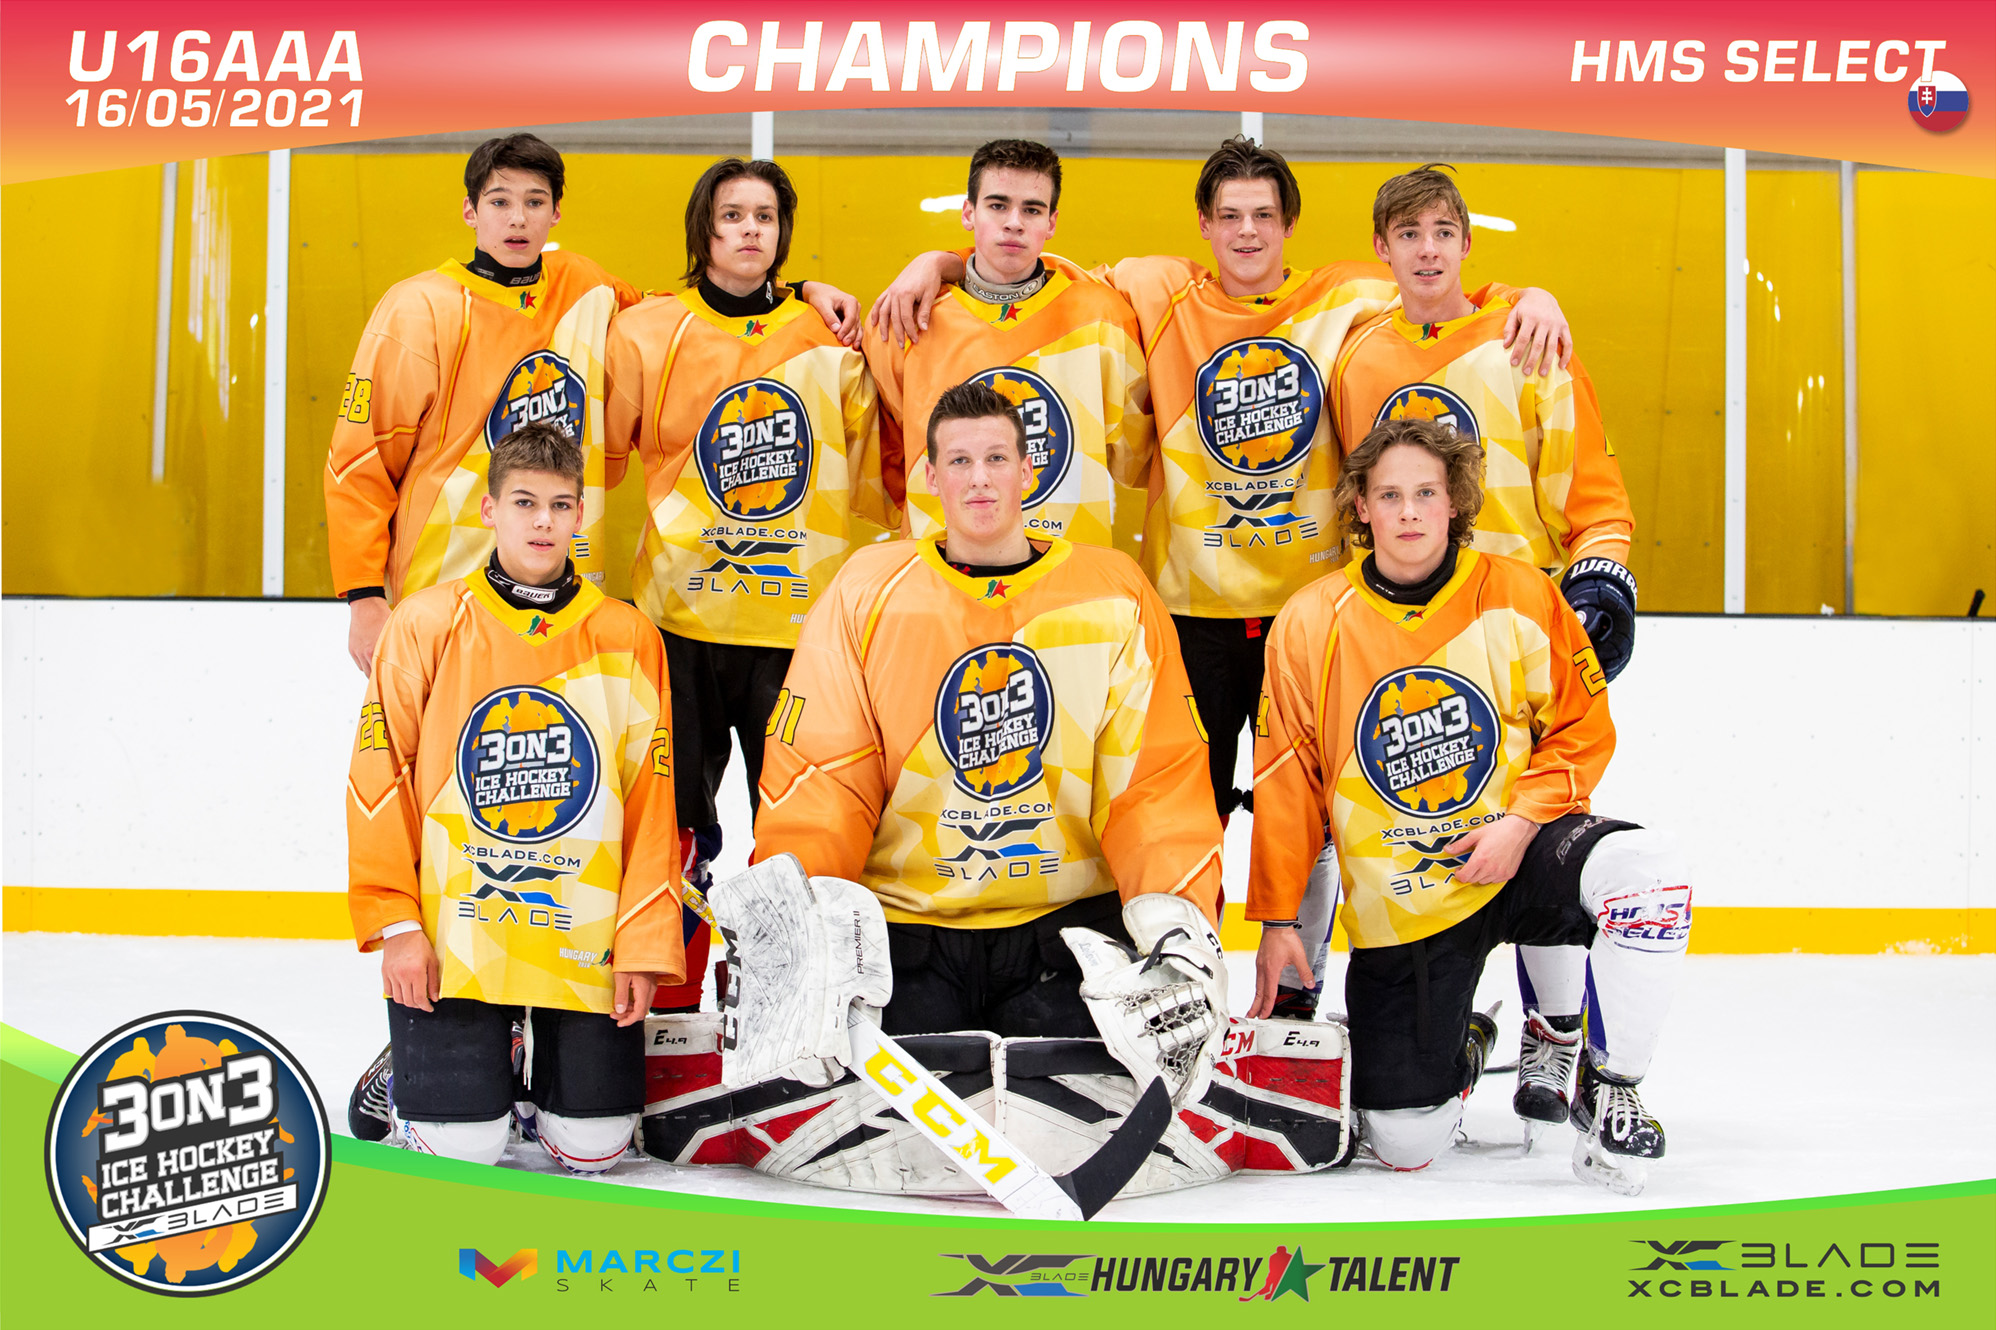 A szlovák HMS Select csapat nyerte az U16AAA 3on3 Ice Hockey Challenge tornát